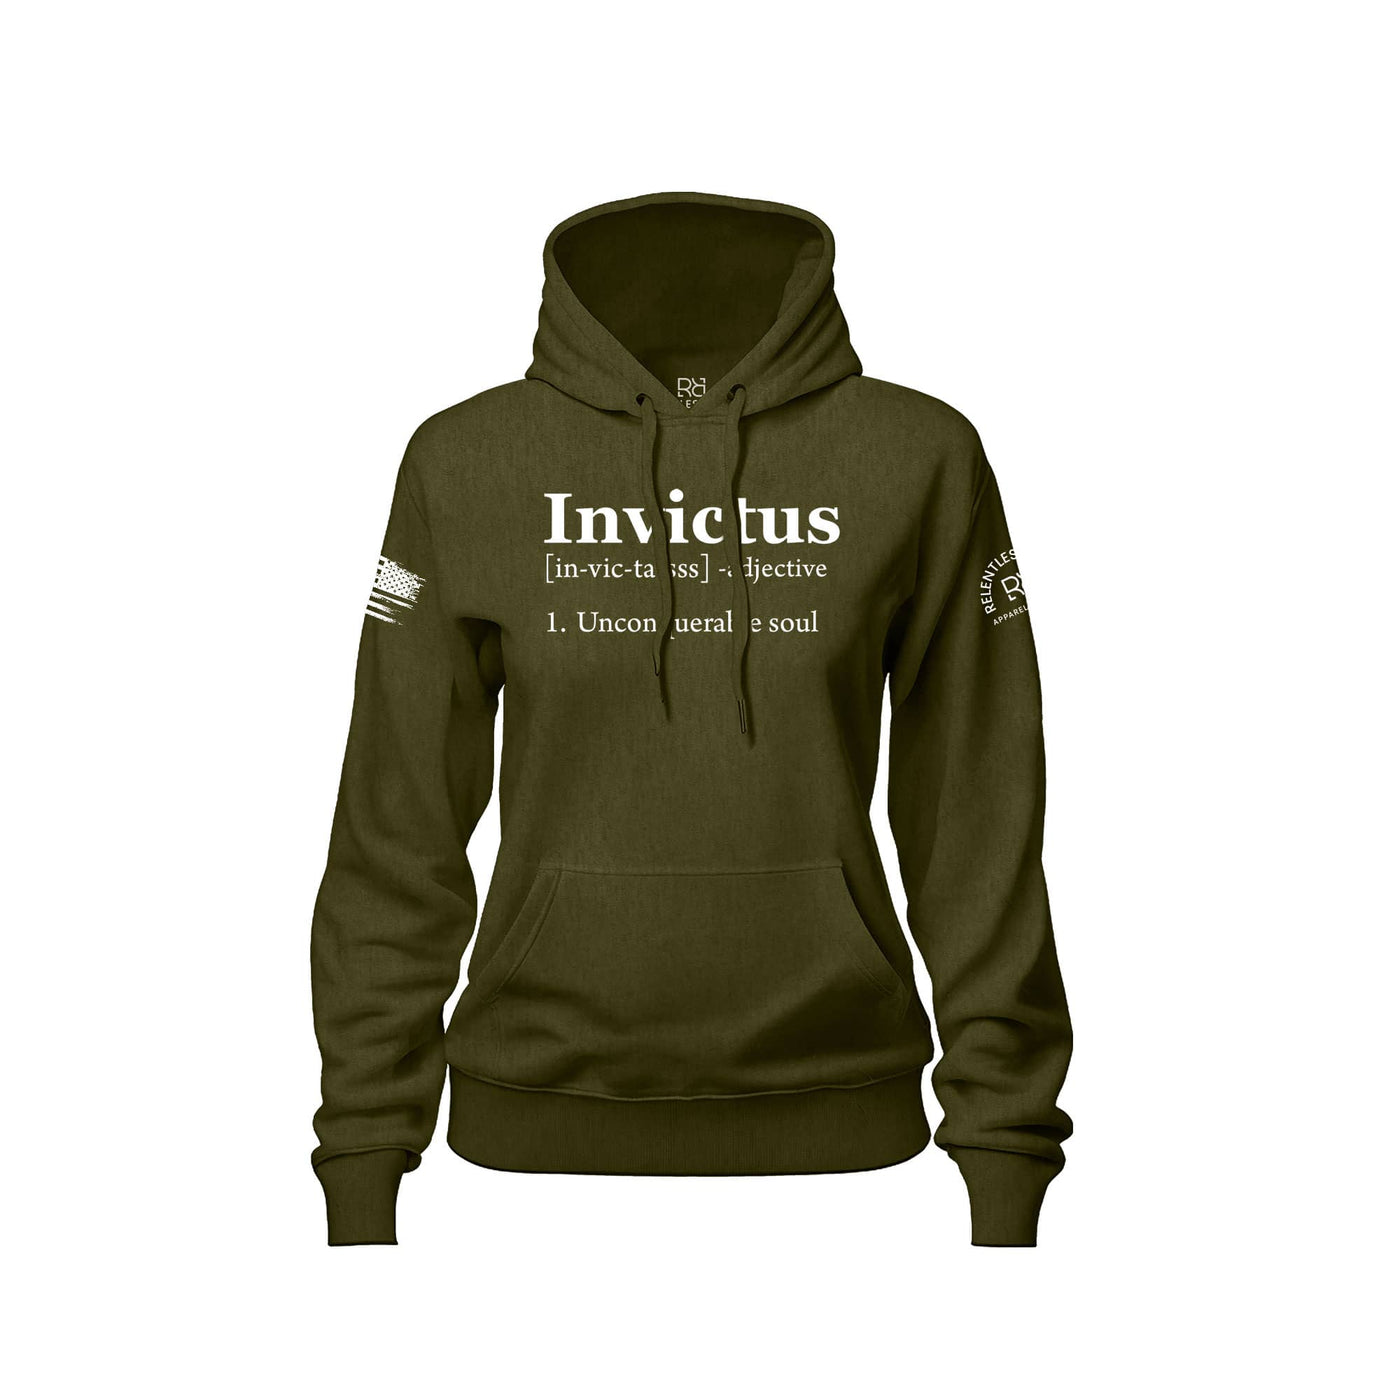 Invictus | Front | Women's Hoodie